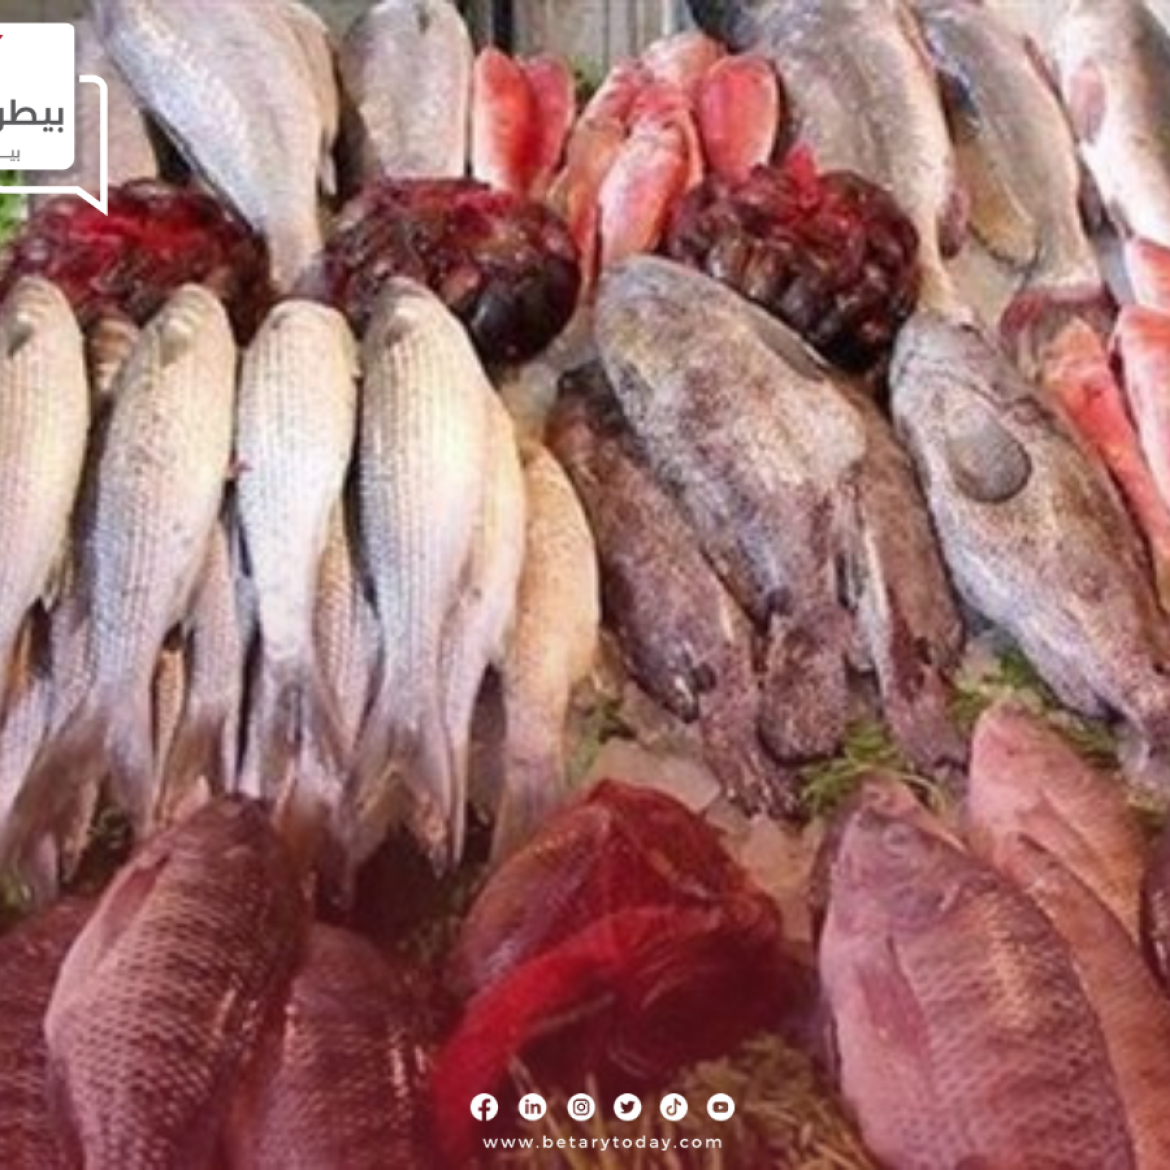 السمك غلى ولا رخص... أسعار الأسماك والمأكولات البحرية اليوم الخميس في الأسواق